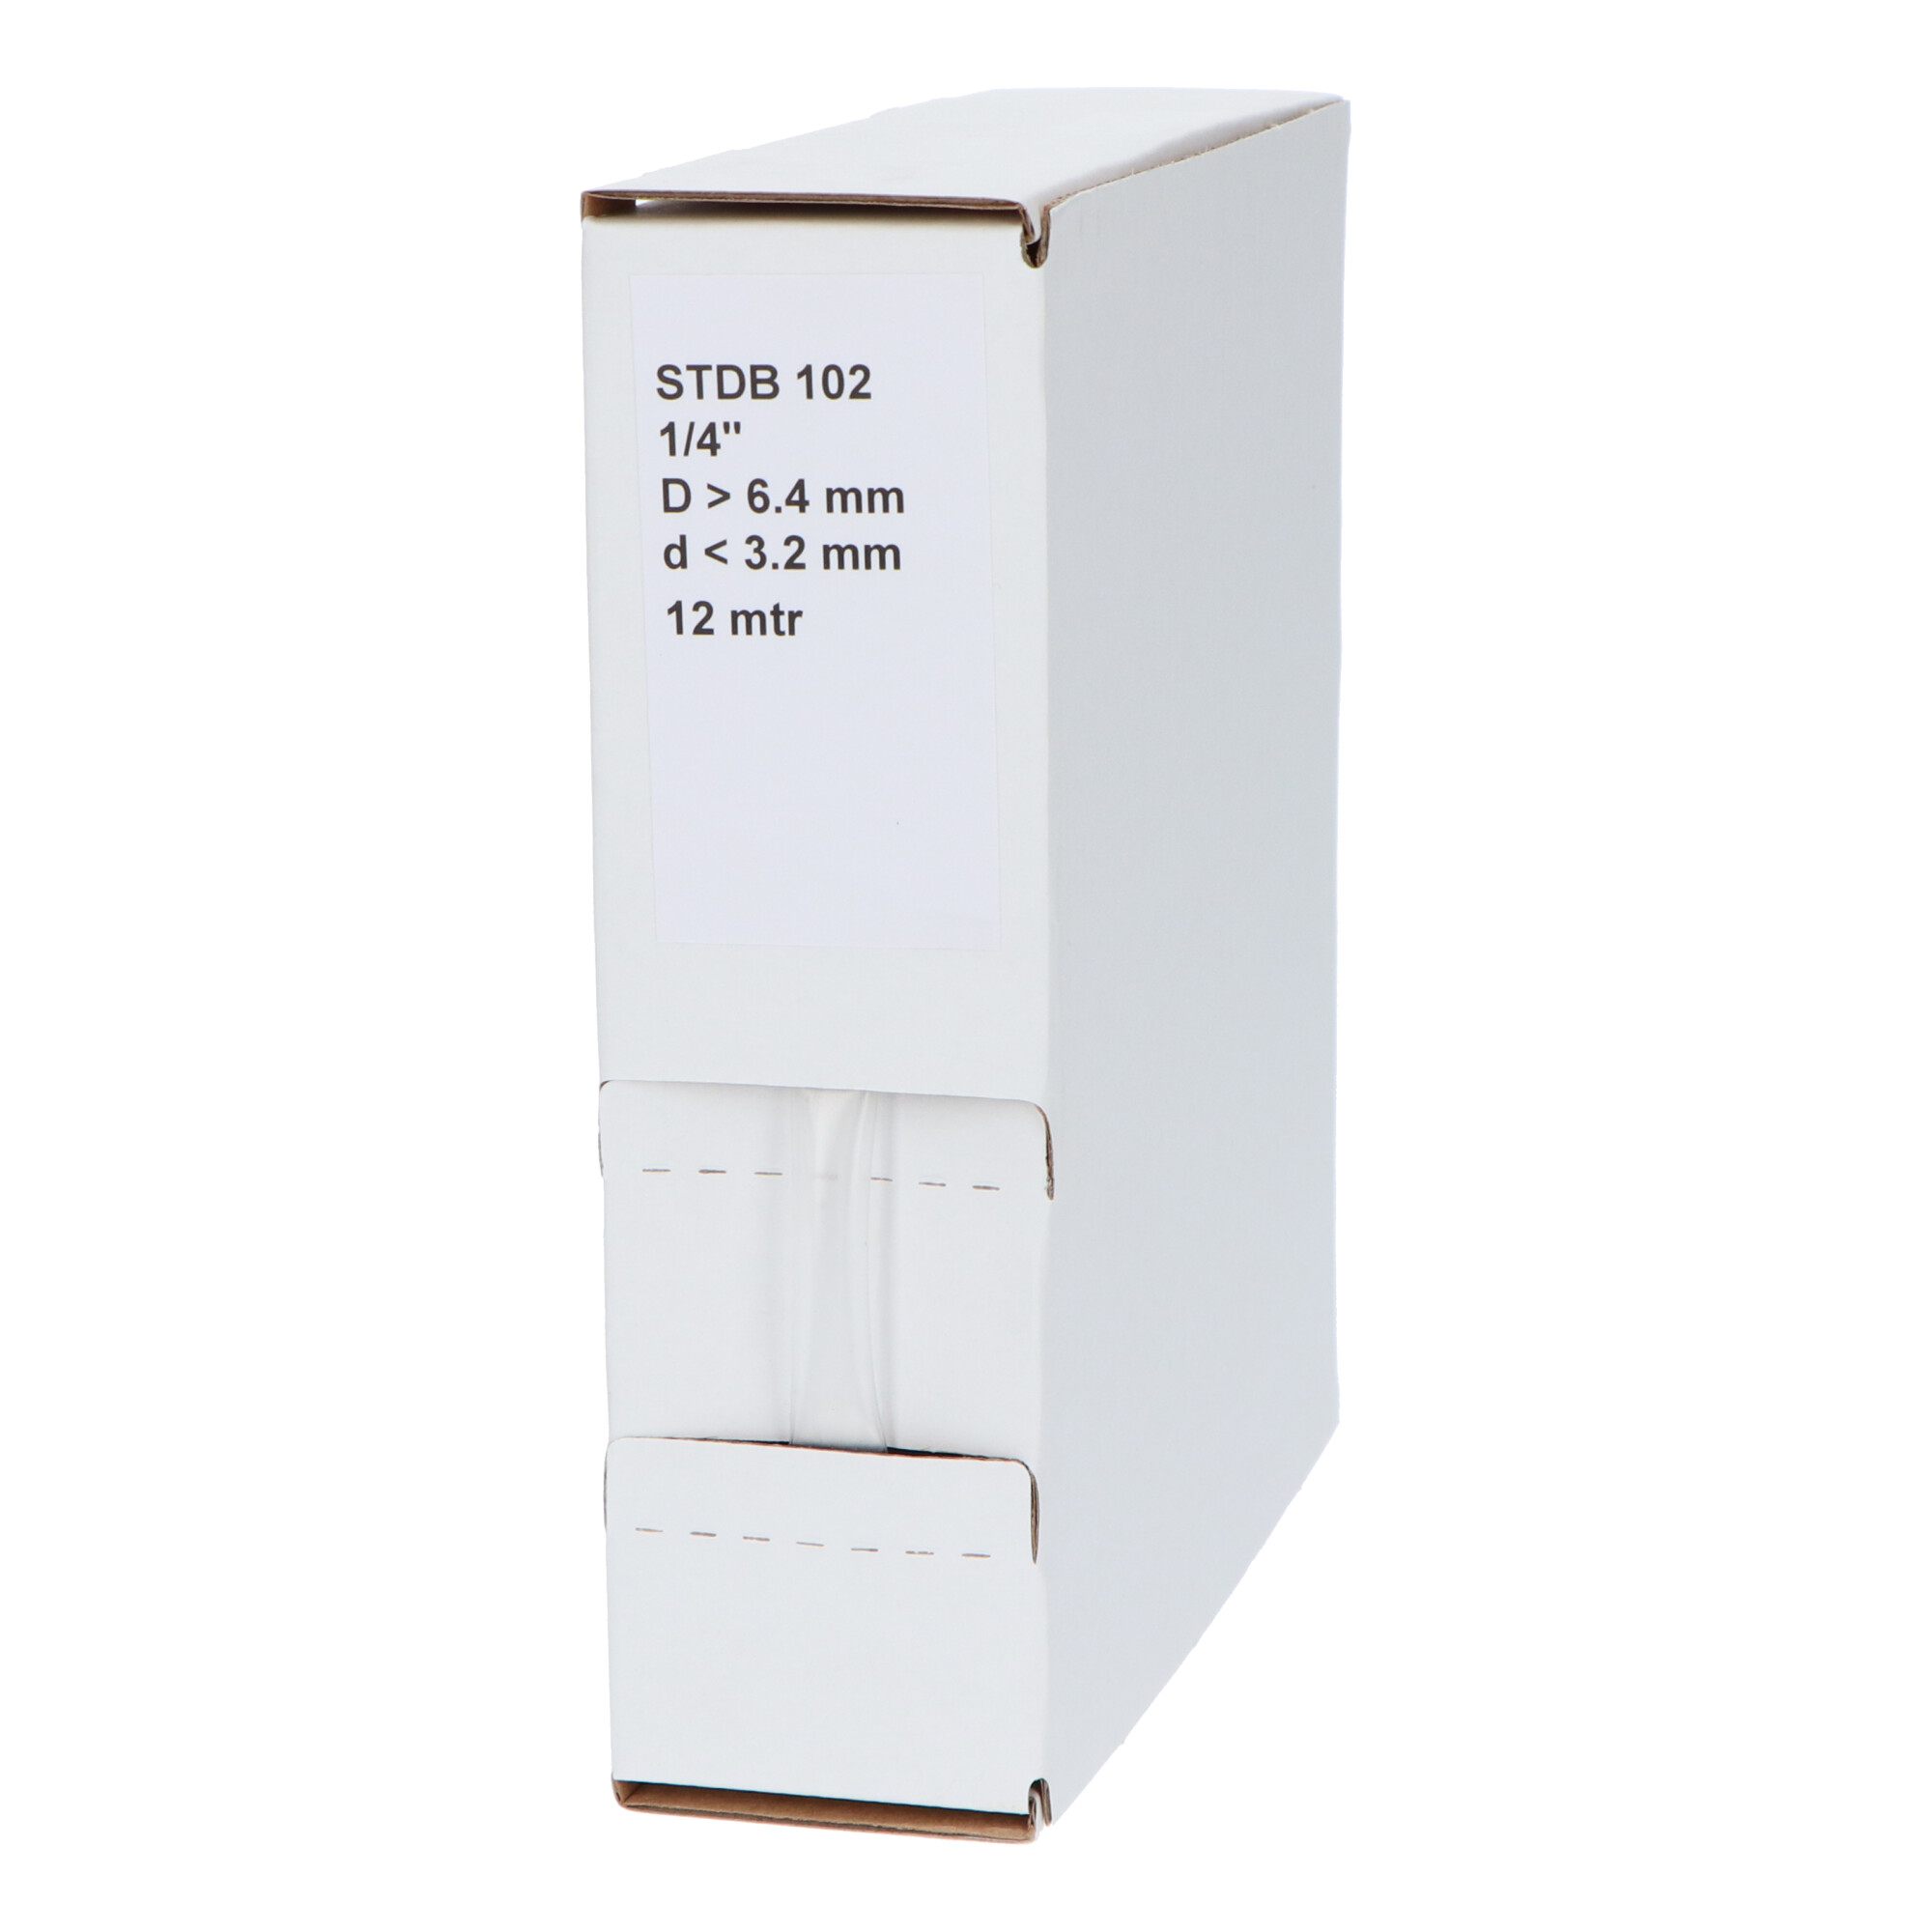 29-22006410G STDB 102 Krimpkous STDB 102 | 2:1 in dispenser box